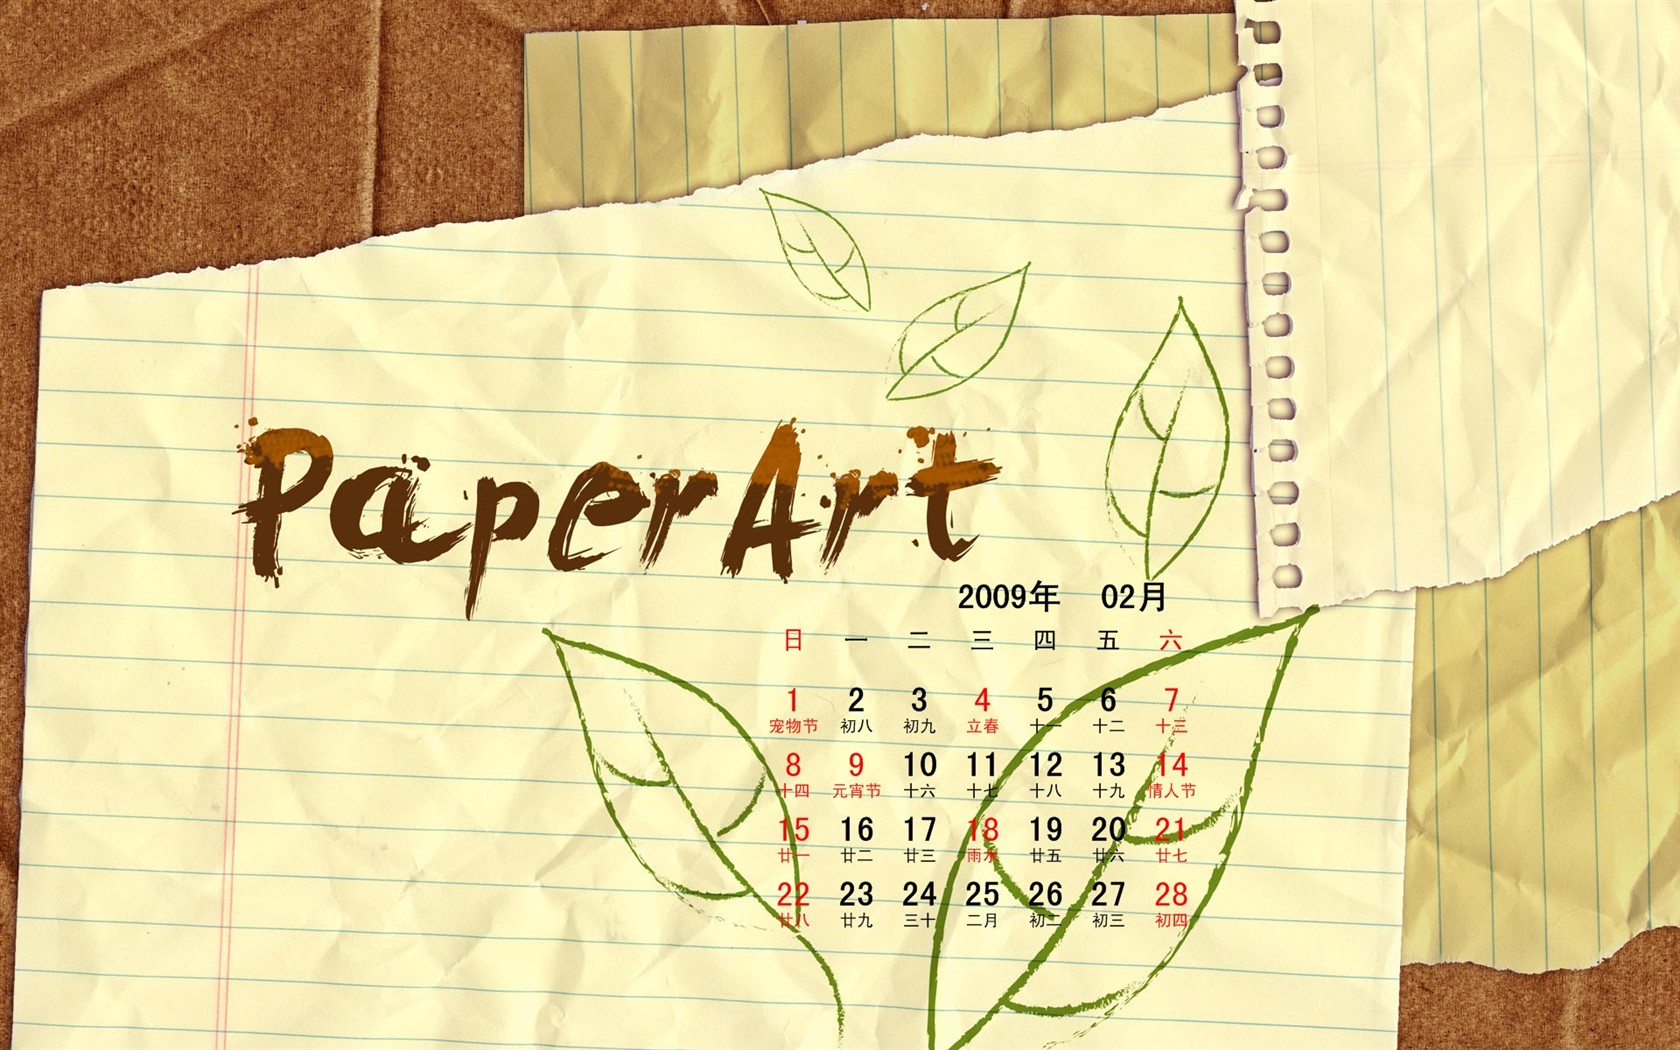 PaperArt 09 roků v kalendáři wallpaper února #27 - 1680x1050